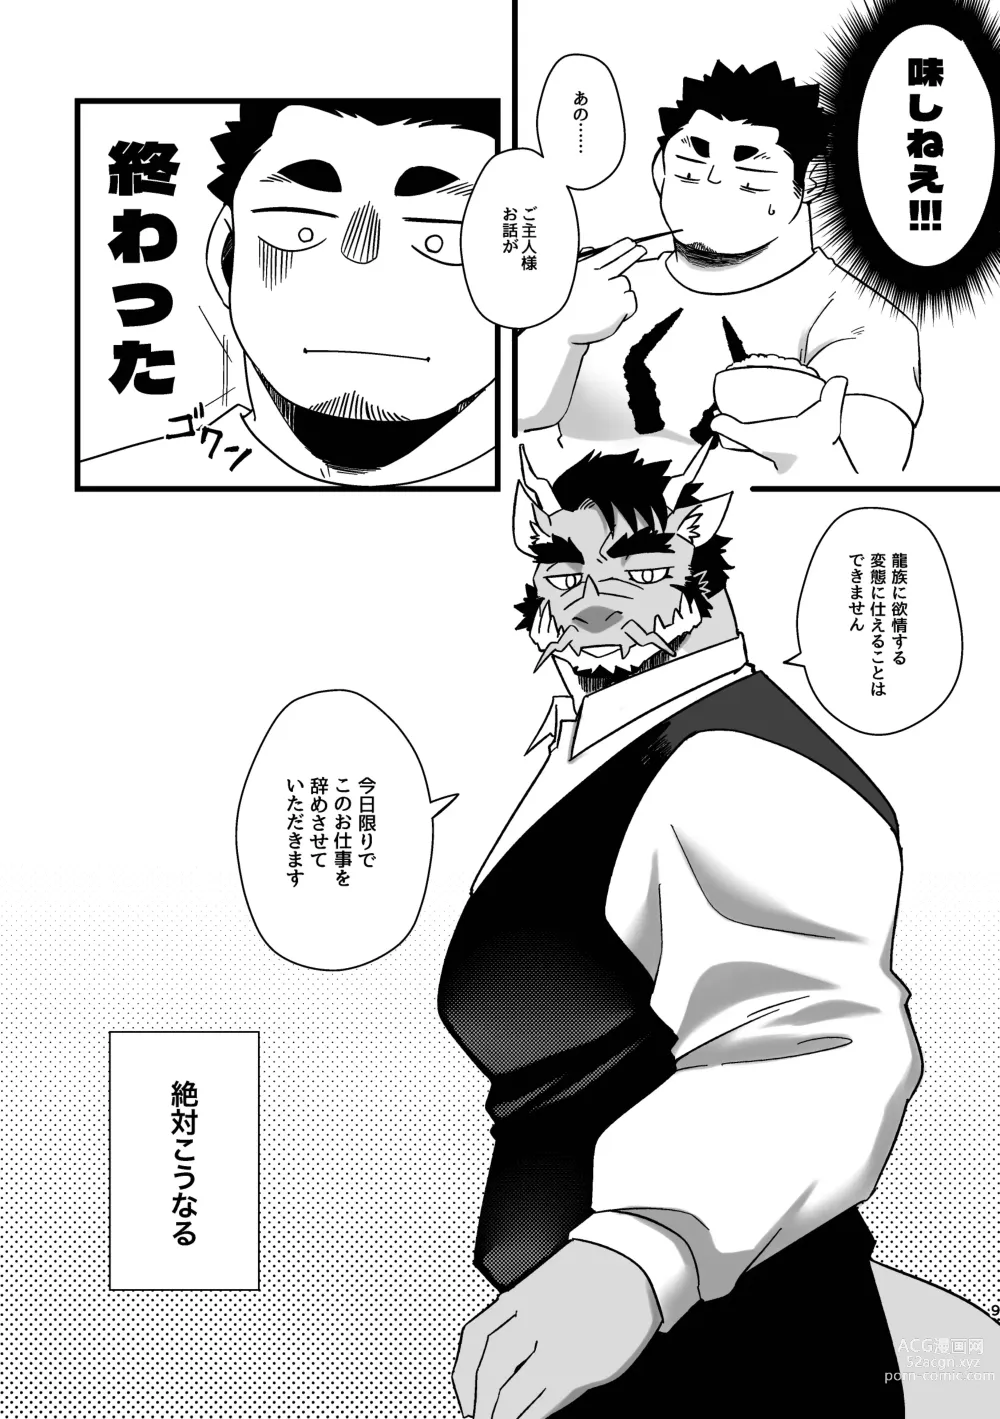 Page 9 of doujinshi Goshujin-sama no Bariuke Hentai Dragon Shitsuji desukara